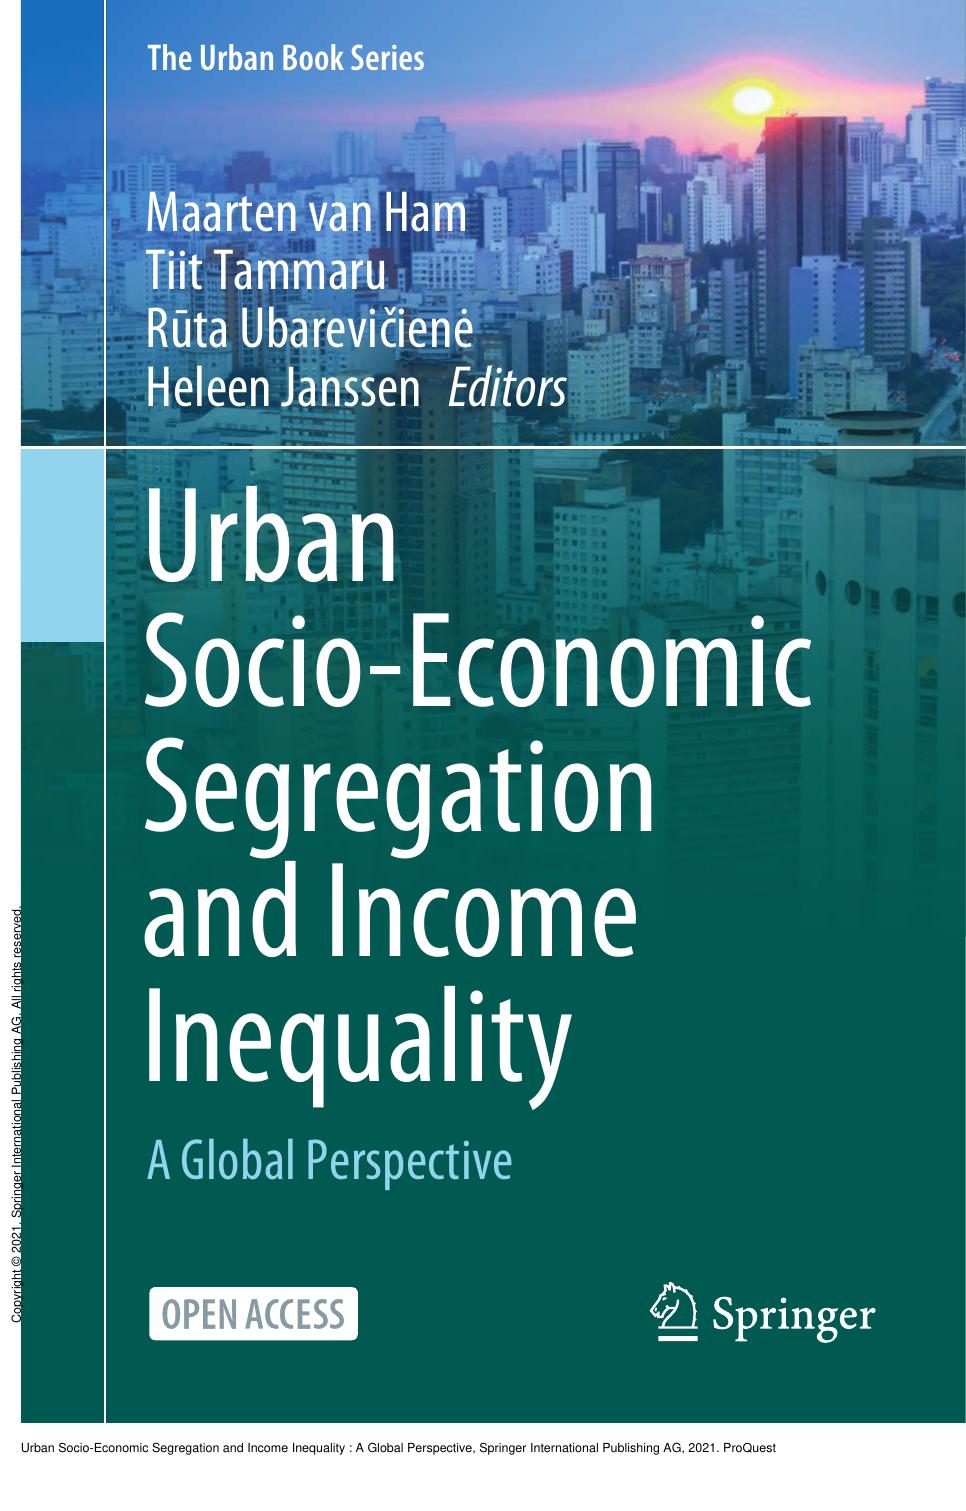 Urban Socio-Economic Segregation and Income Inequality: A Global Perspective by Maarten van Ham; Tiit Tammaru; Rūta Ubarevičienė; Heleen Janssen